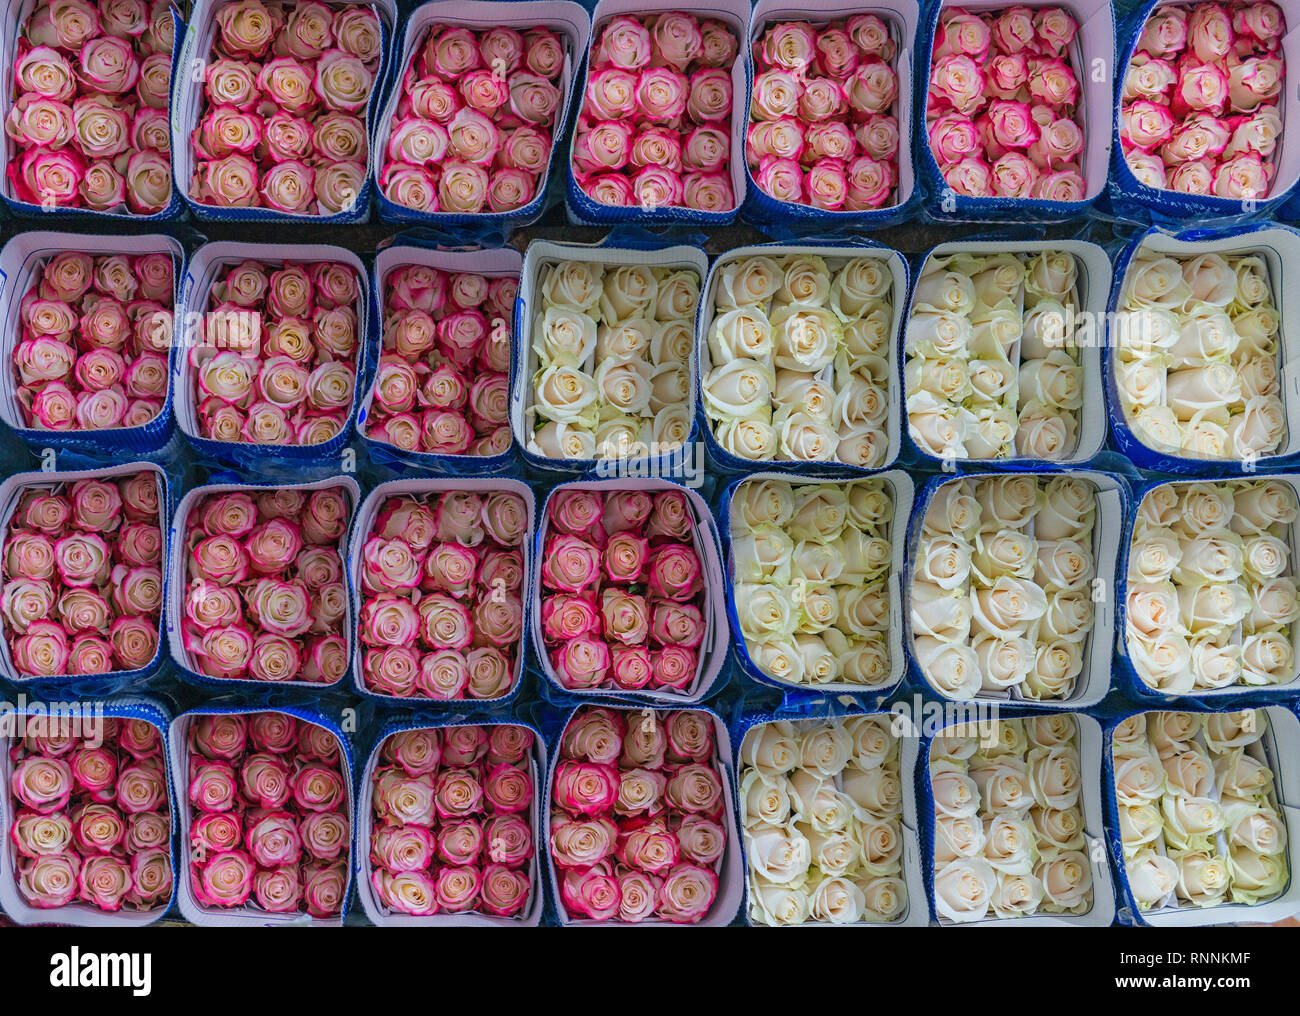 Dutzende von rosa und weißen Rosen bereit, um die Globale Weltwirtschaft in Cayambe, nördlich von Quito, Ecuador zu exportieren. Stockfoto